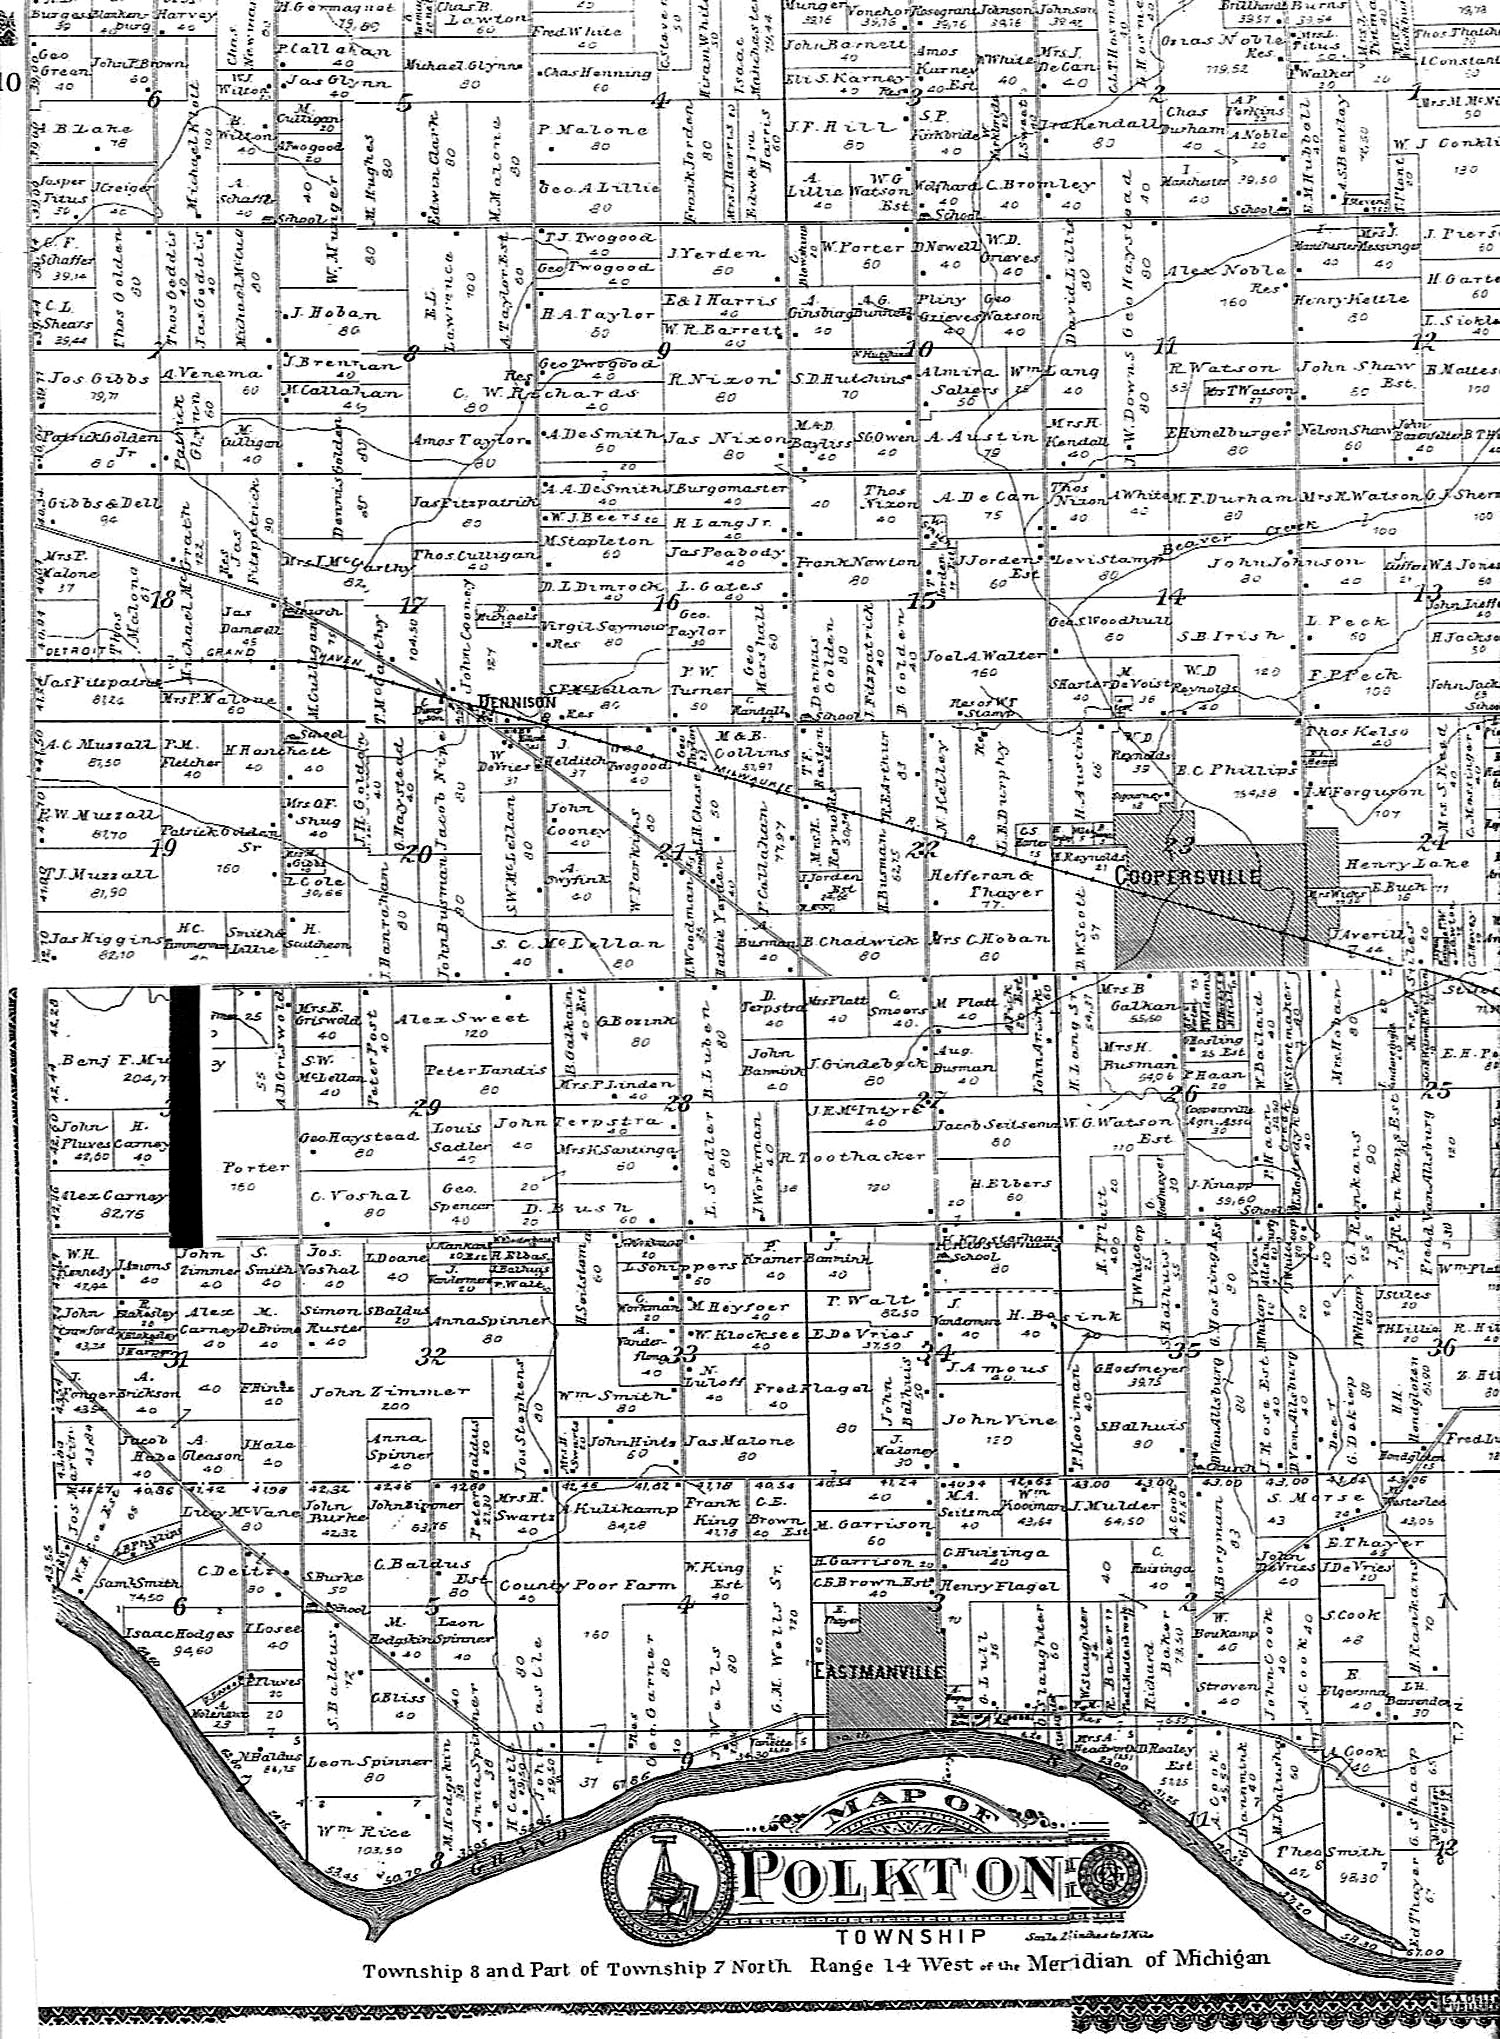 1897 Polkton Township Map